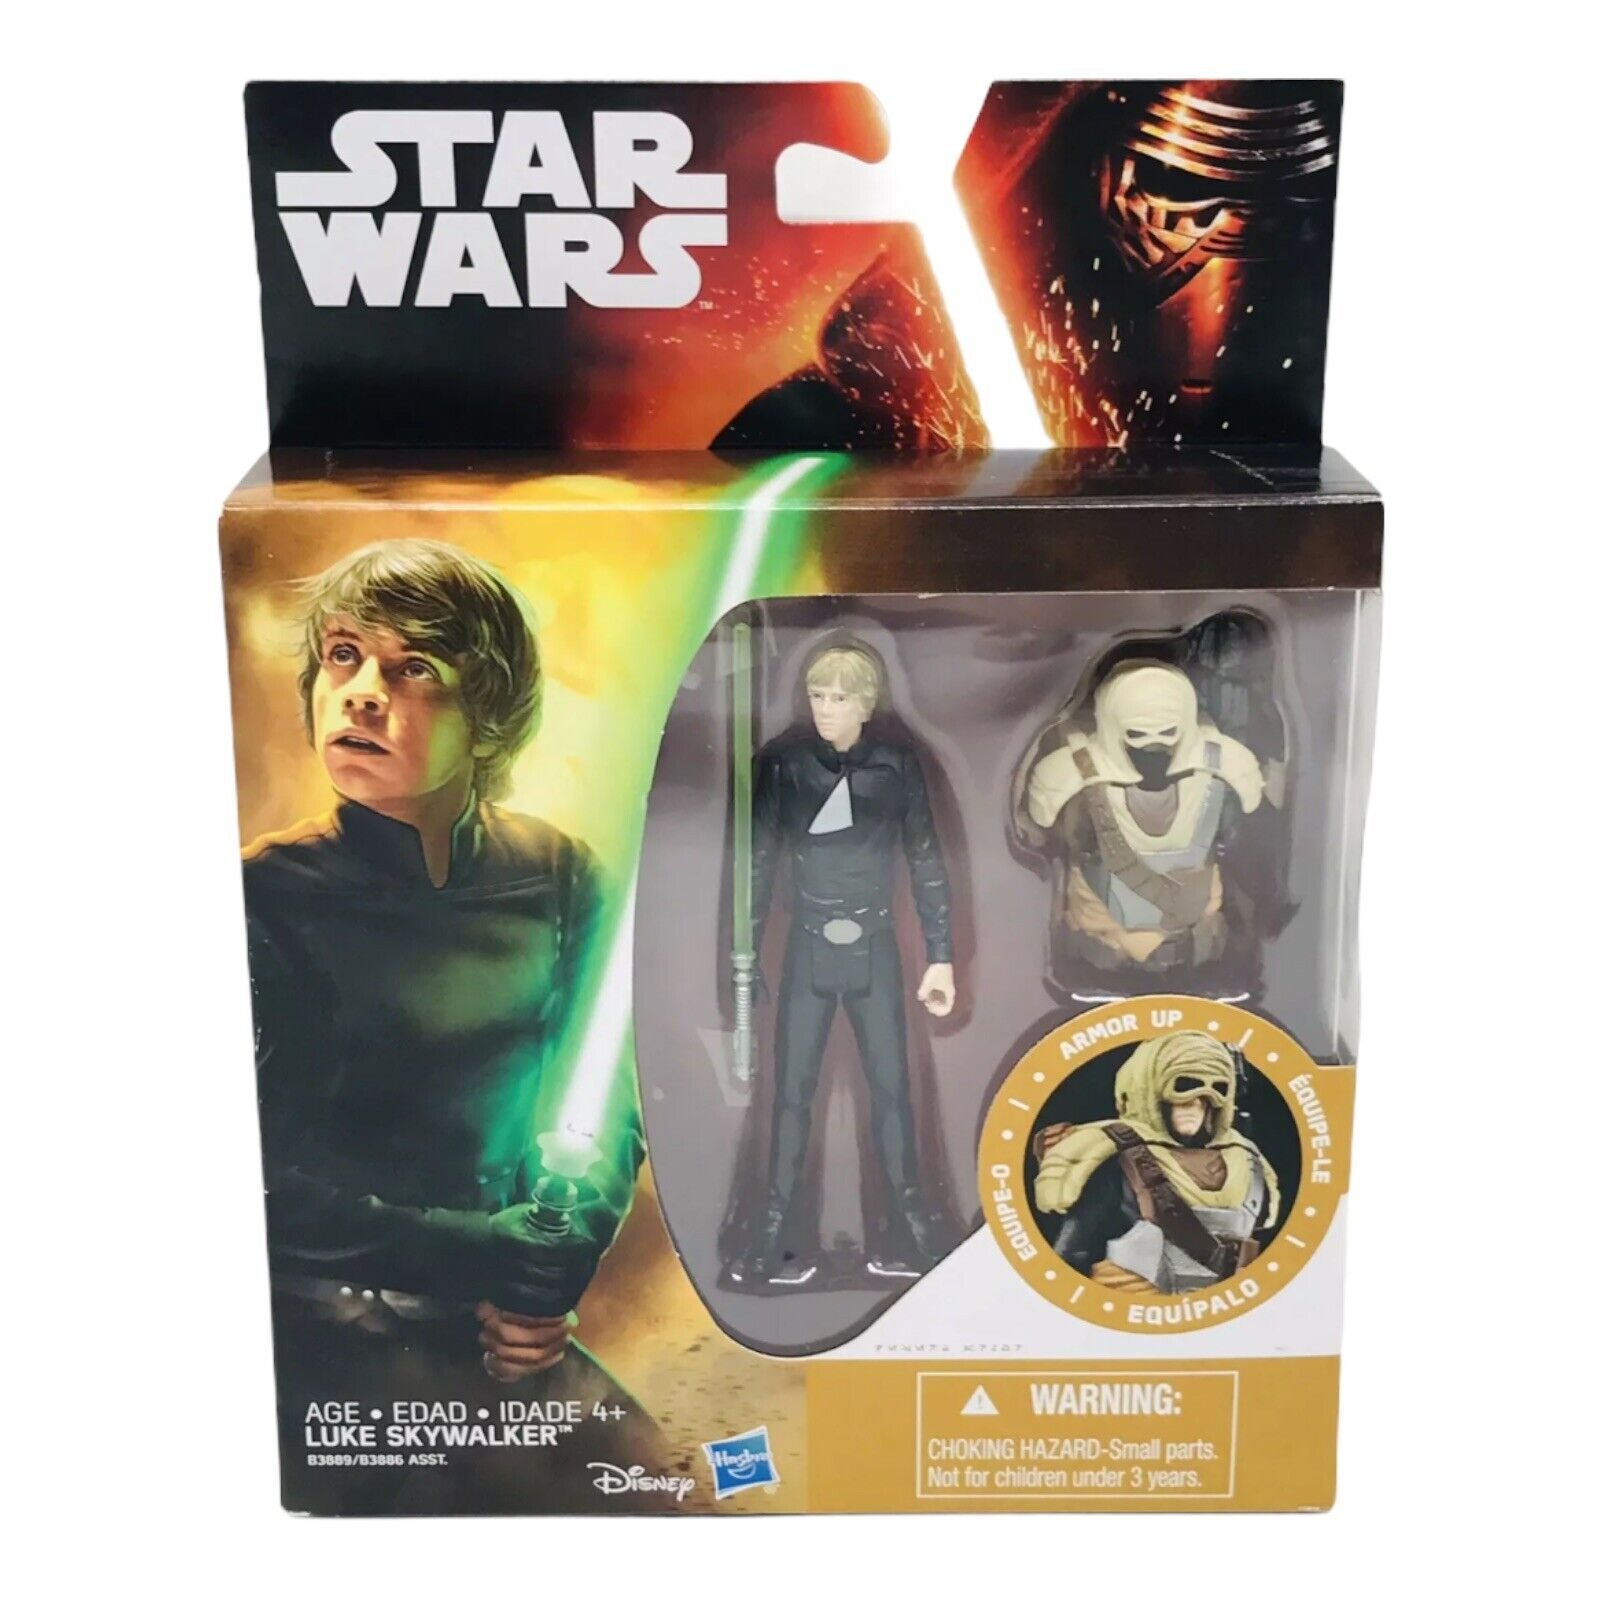 Star Wars The Empire Strikes Back - Luke Skywalker (Armor Up)